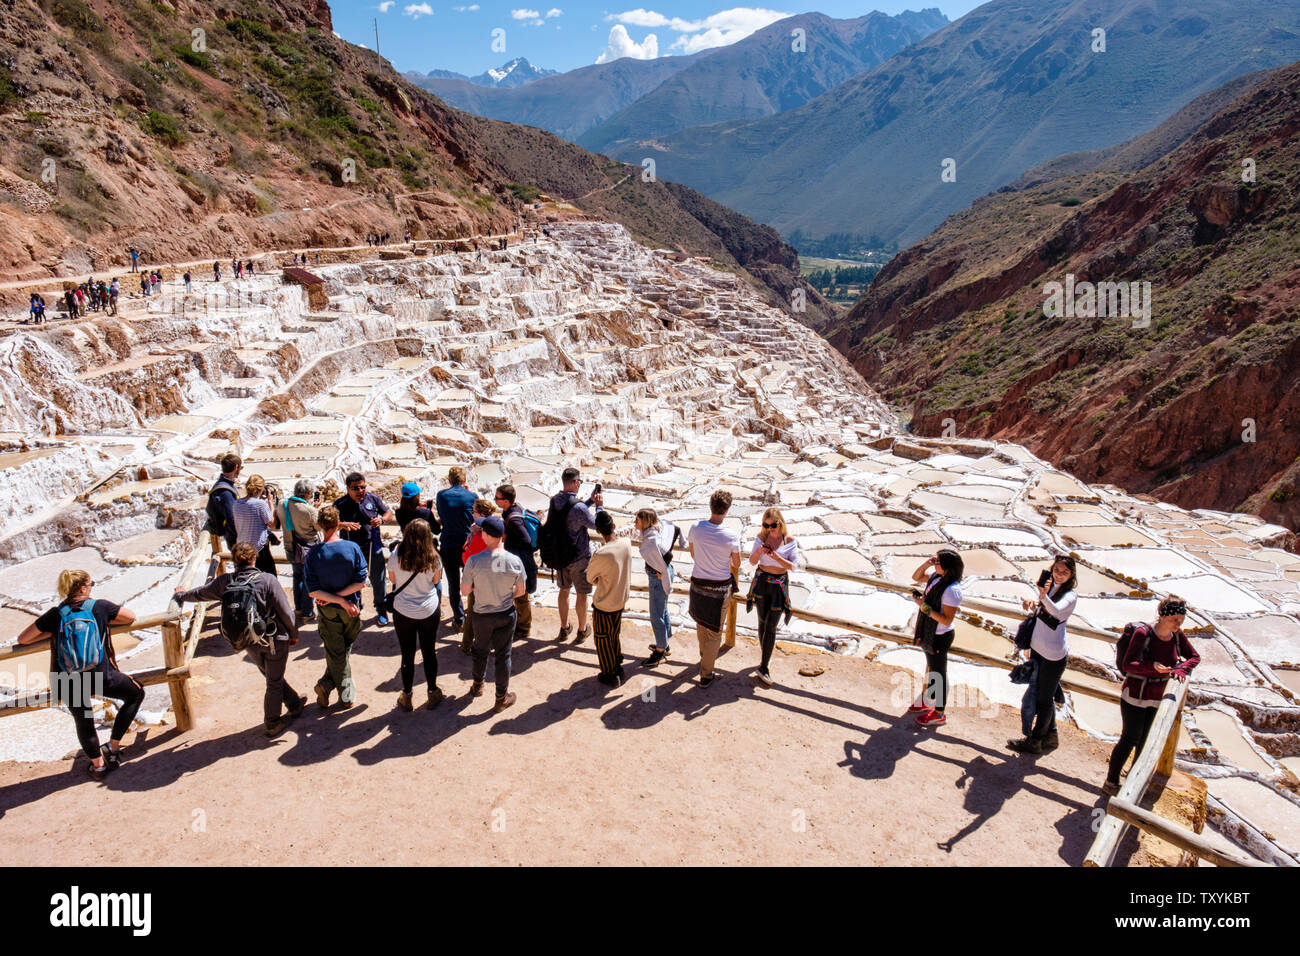 Les touristes visitant les salineras de Maras / Maras Salt Mines. Extraction de sel dans les bassins de sel de Maras, terrasses et étangs, tourisme de masse, Pérou Vallée Sacrée. Banque D'Images